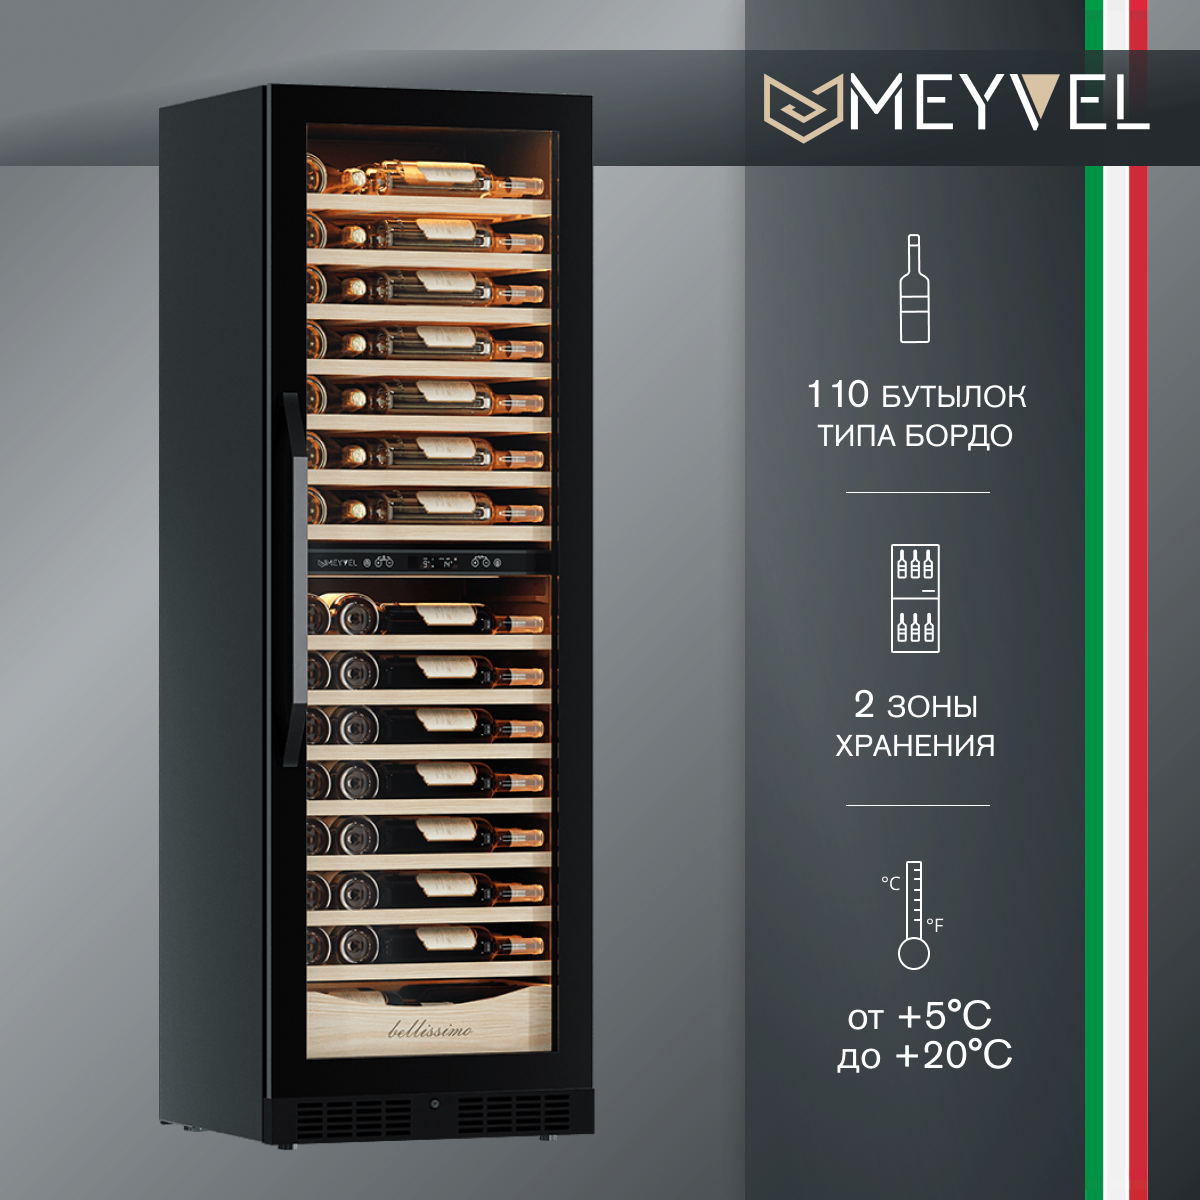 Винный холодильный шкаф Meyvel MV110-KBT2 (Slim) компрессорный (встраиваемый / отдельностоящий холодильник для вина на 110 бутылок)